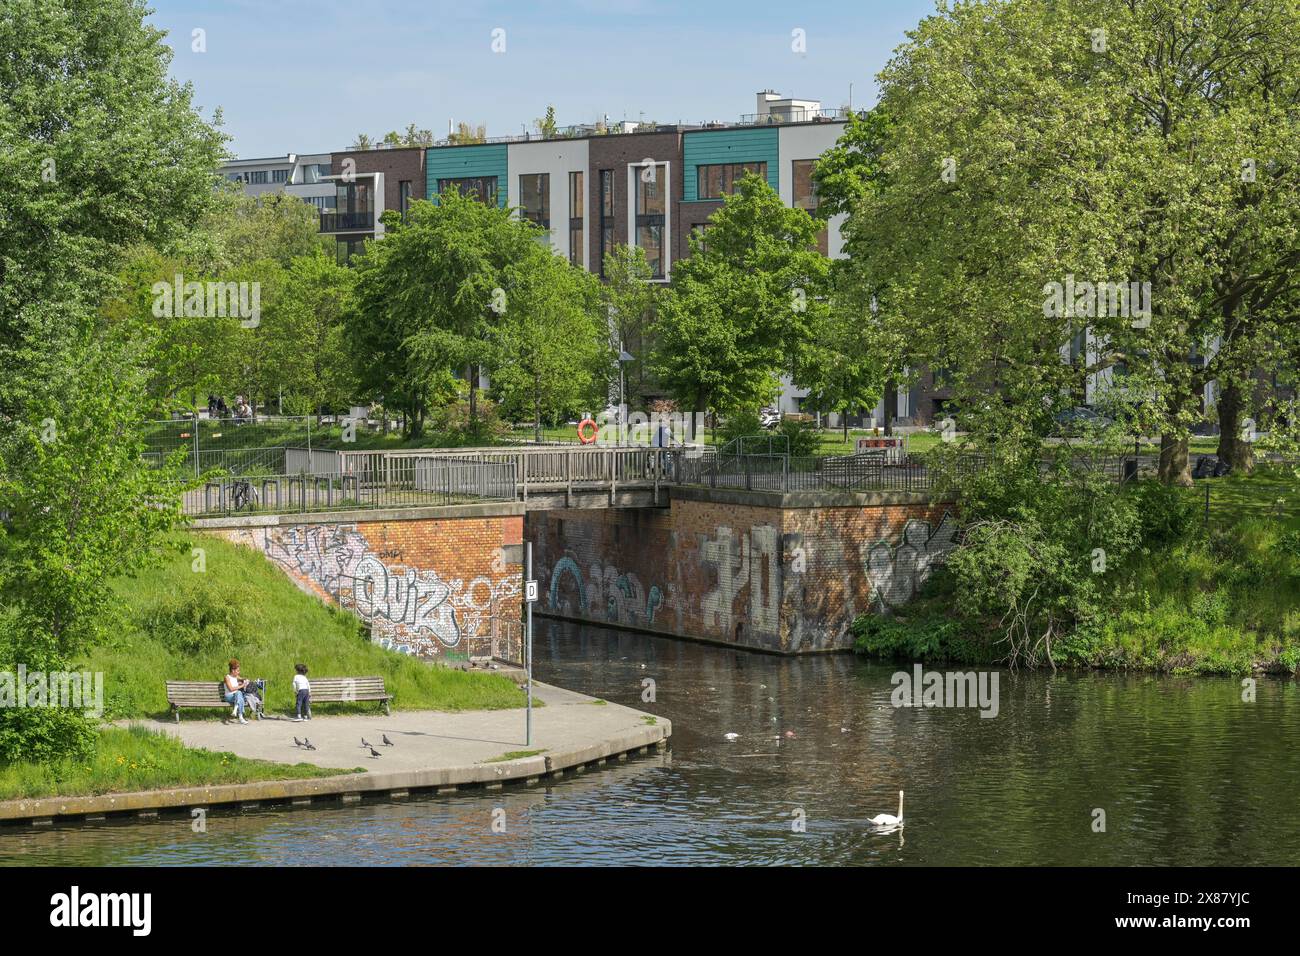 Sellerbrücke, Mündung der Panke in den Nordhafen, Wedding, Mitte, Berlin, Deutschland Foto Stock